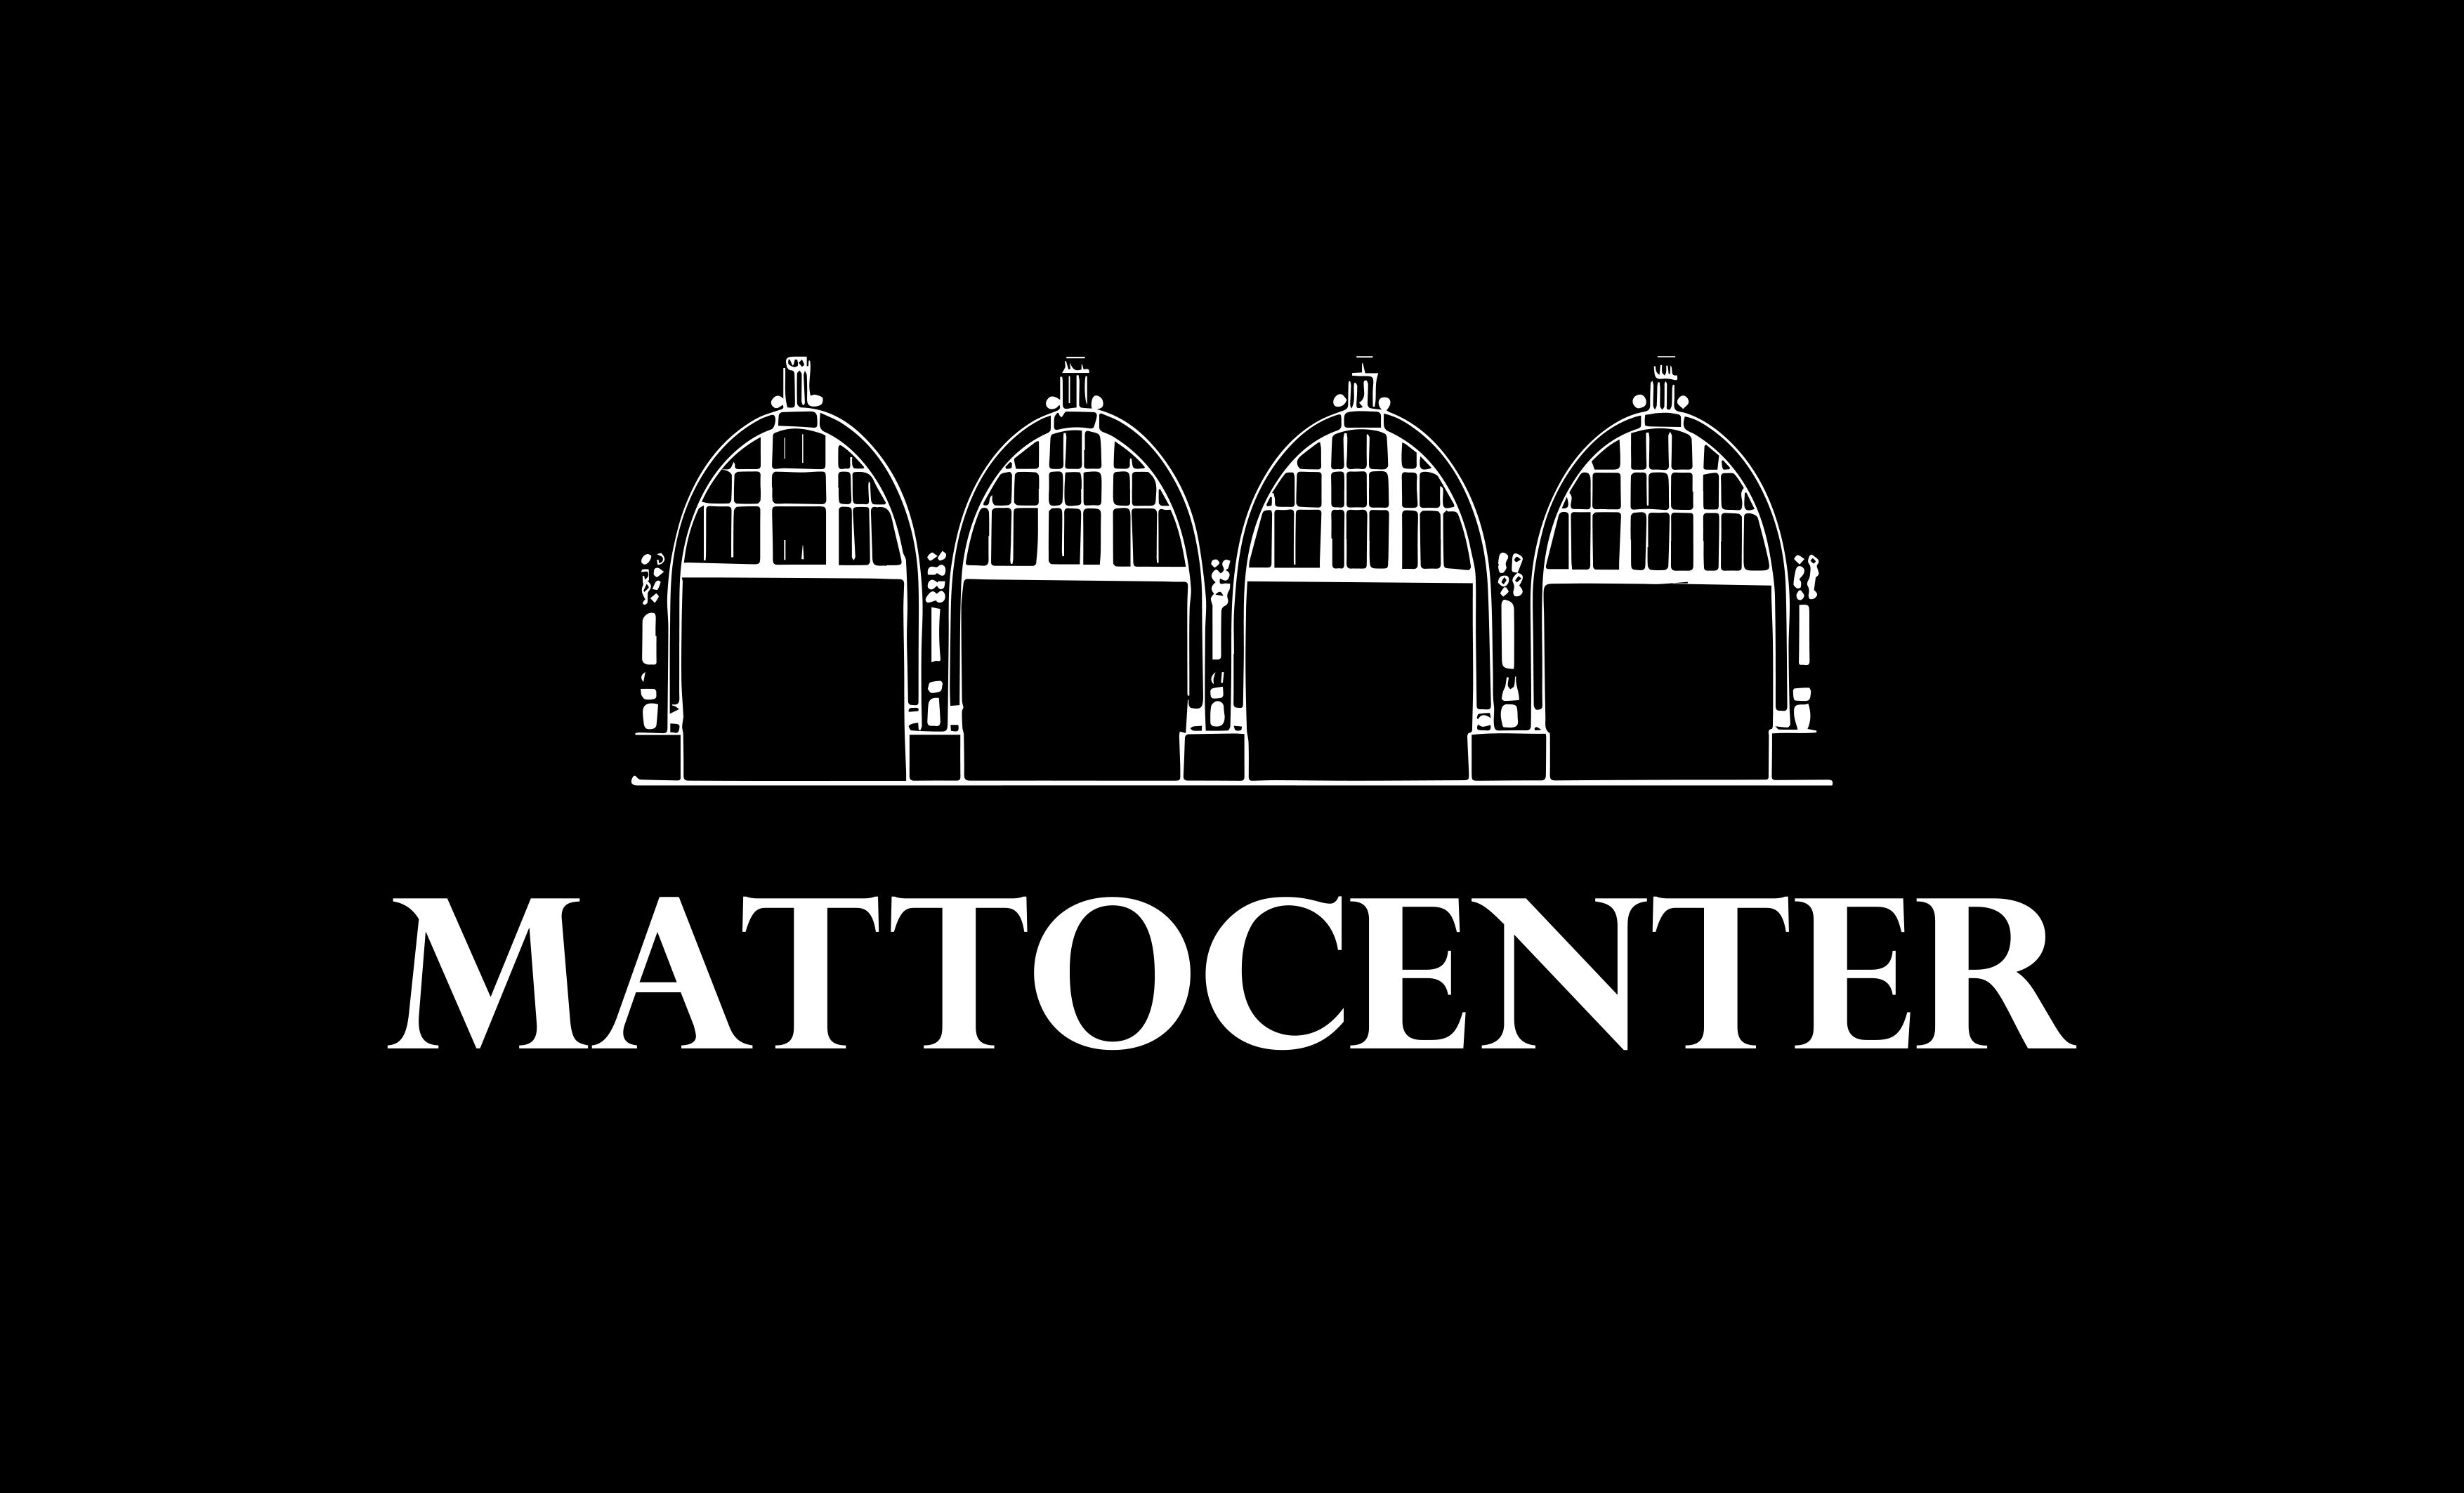 Mattocenter